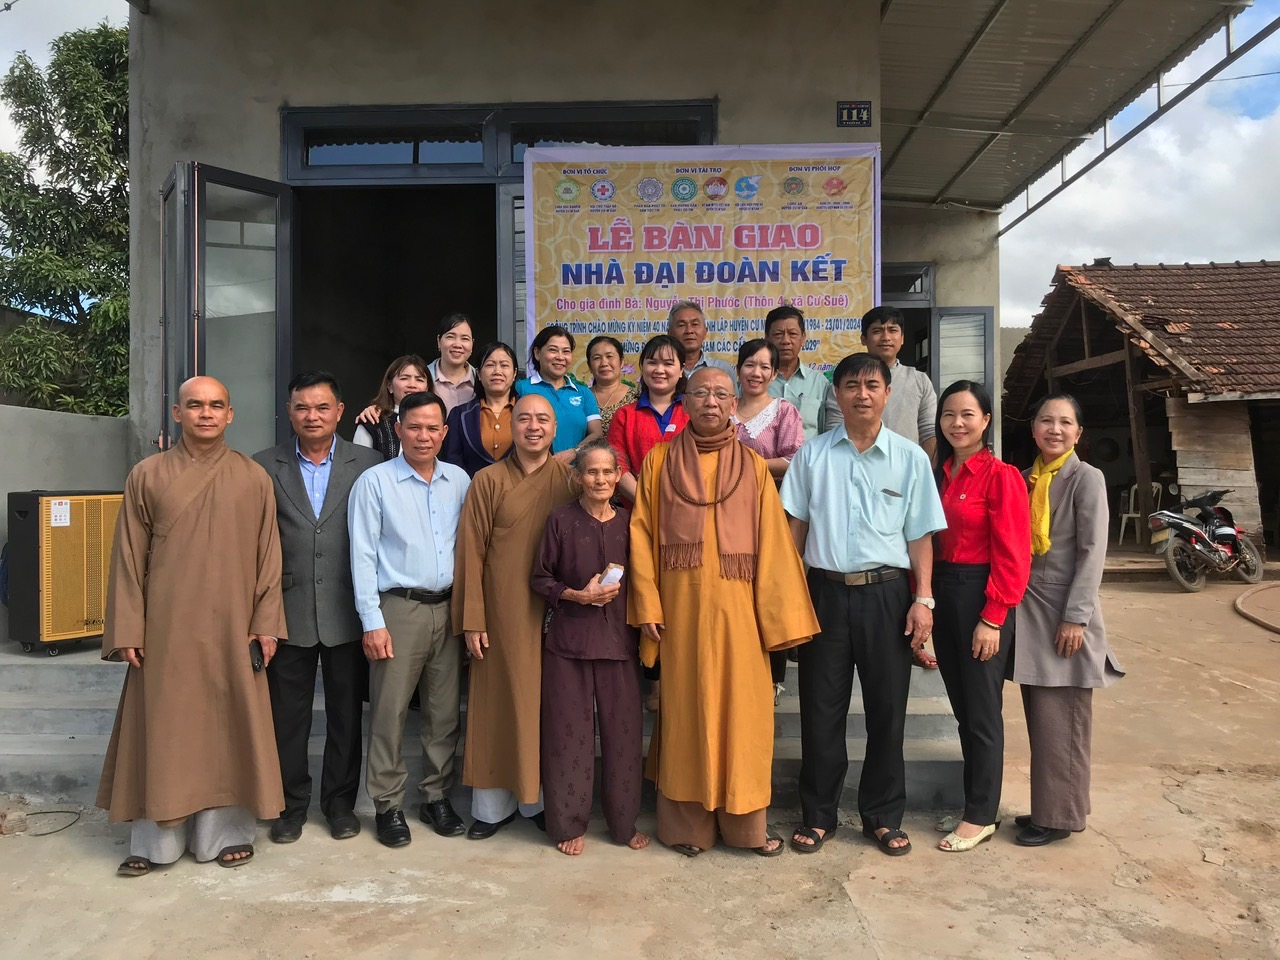 Đắk Lắk: Phân ban Phật tử Dân tộc TƯ bàn giao nhà Đại Đoàn kết tại huyện Cư M’gar